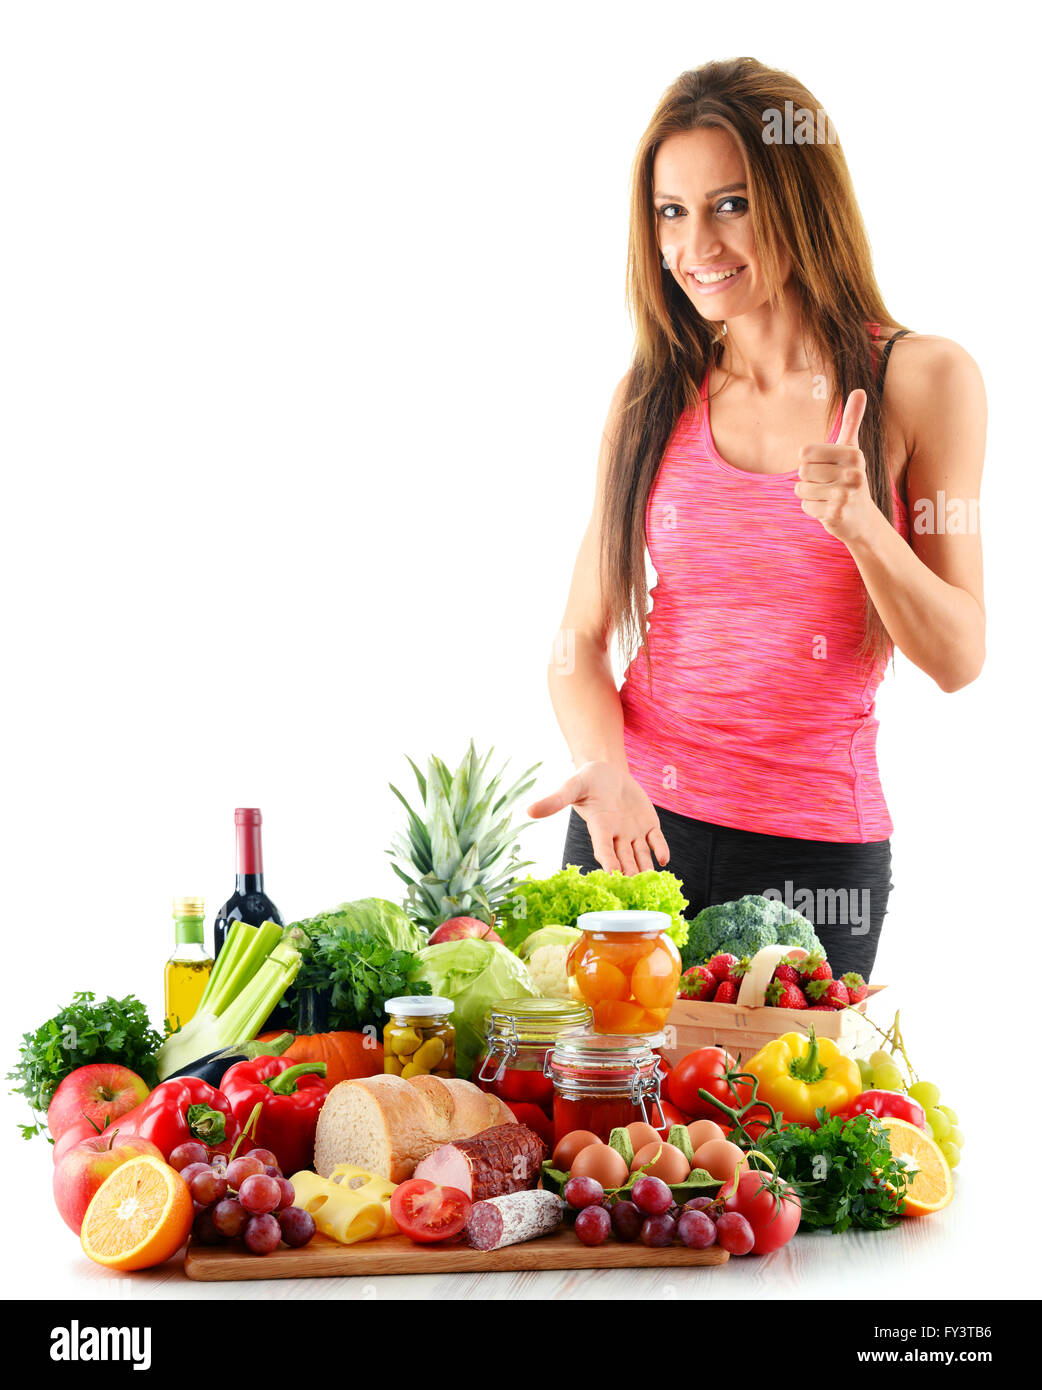 Jeune femme avec un assortiment de produits alimentaires biologiques. Alimentation équilibrée Banque D'Images